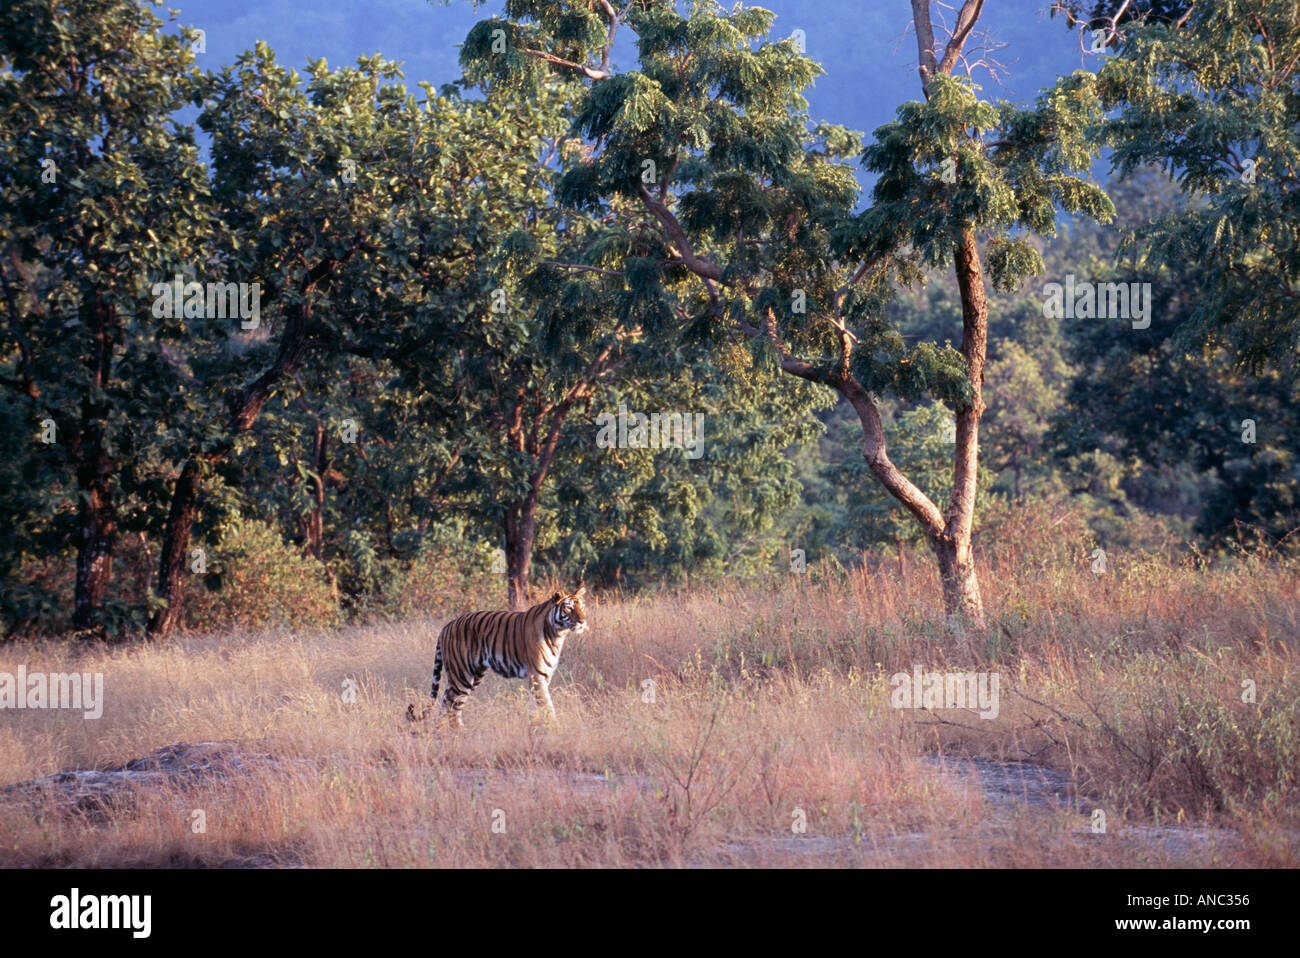 Tigre du Bengale Panthera tigris mâle adulte de marcher à travers la prairie dans Bandhavgarh NP Inde Banque D'Images